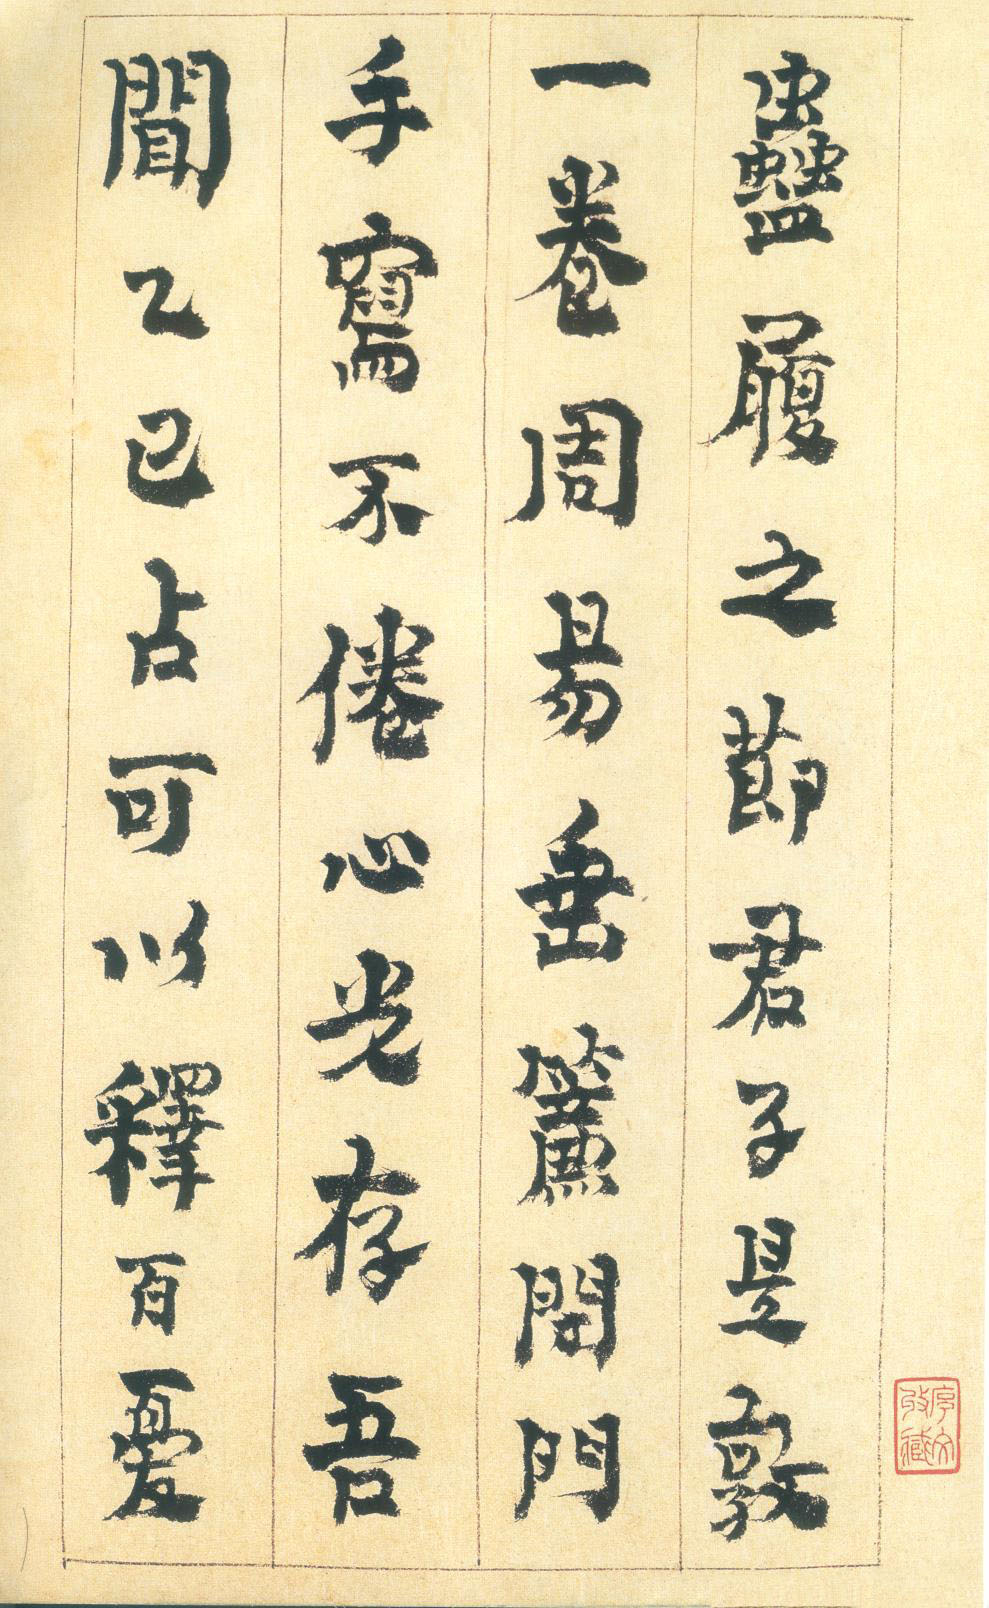 金农行书《砚铭册》册页-广东省博物馆藏(图1)